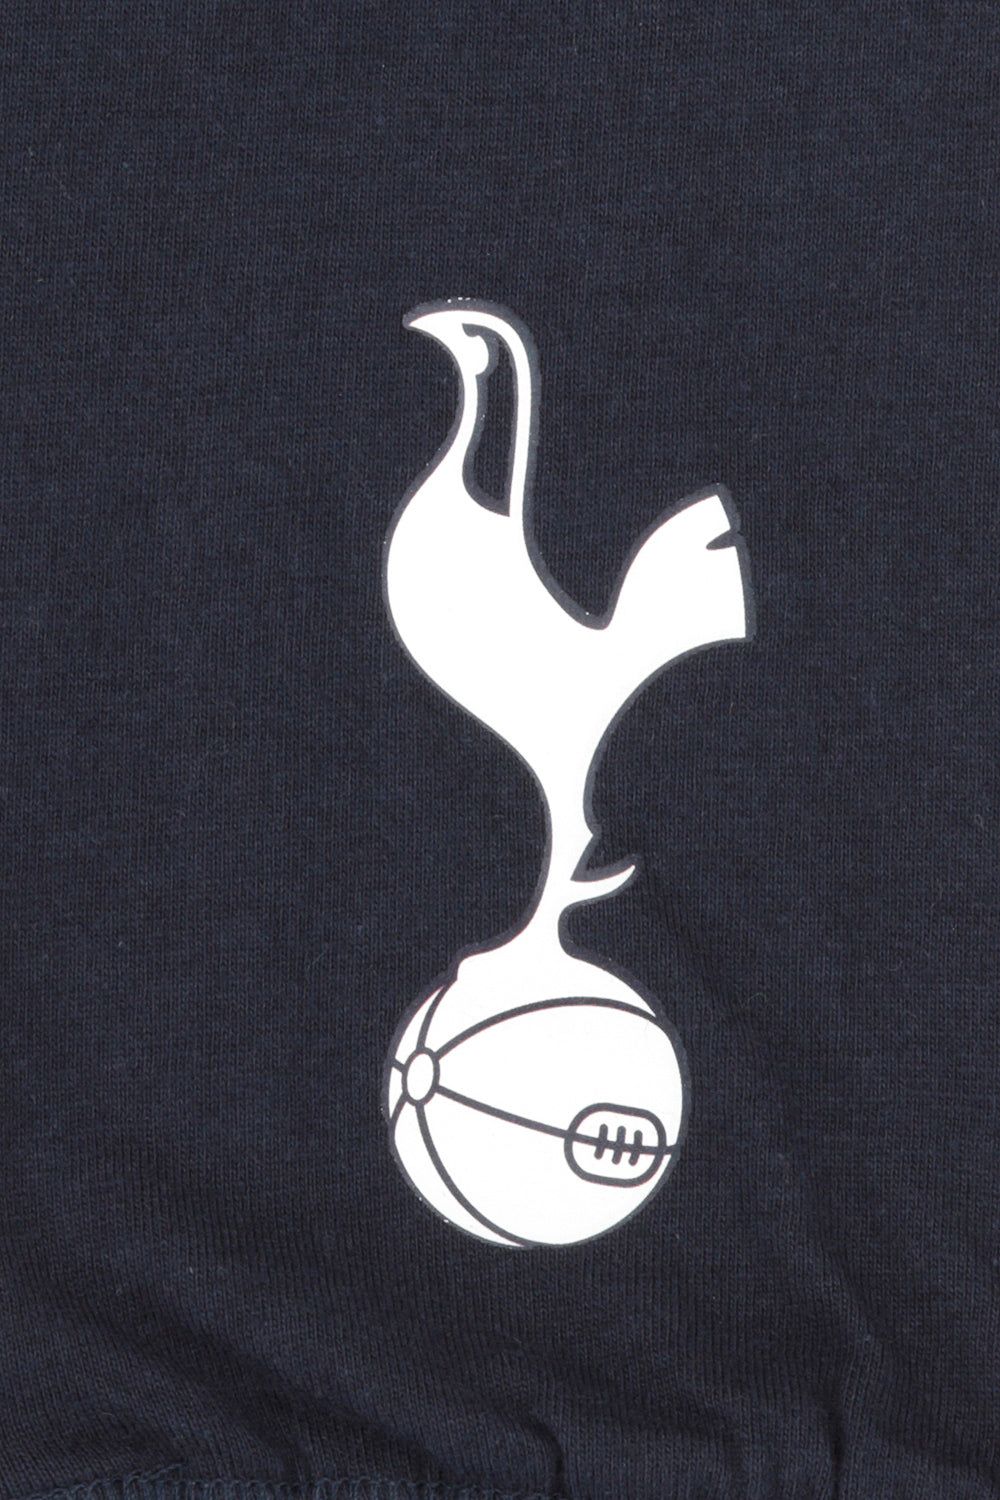 Official Tottenham Football Club Spurs Pyjamas - Pyjamas.com